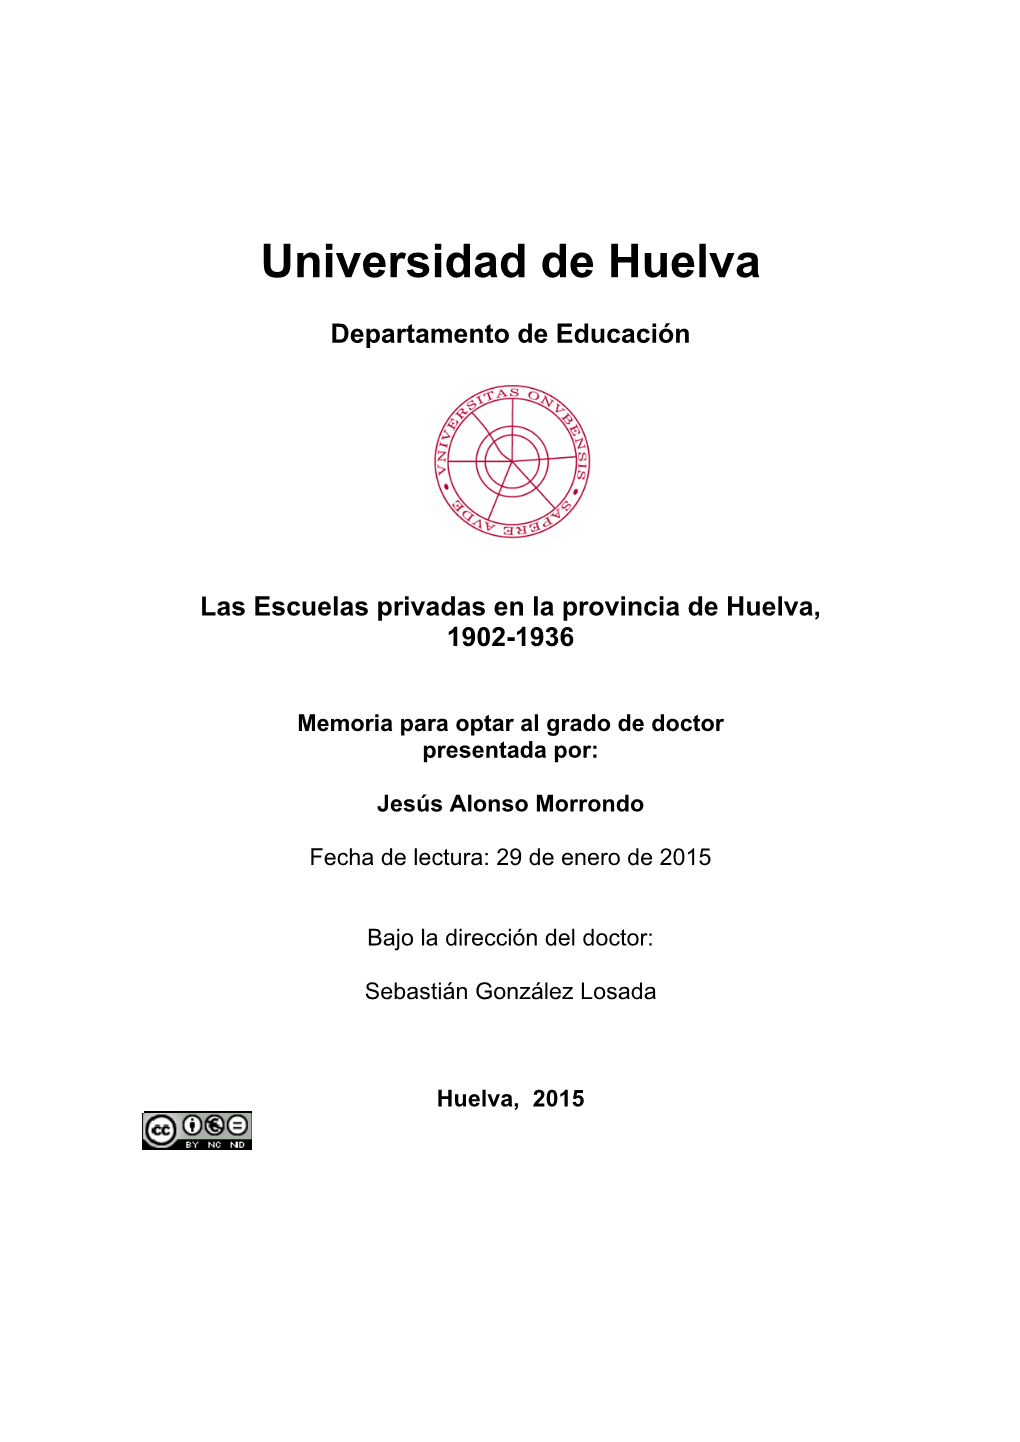 Las Escuelas Privadas En La Provincia De Huelva. 1902-1936